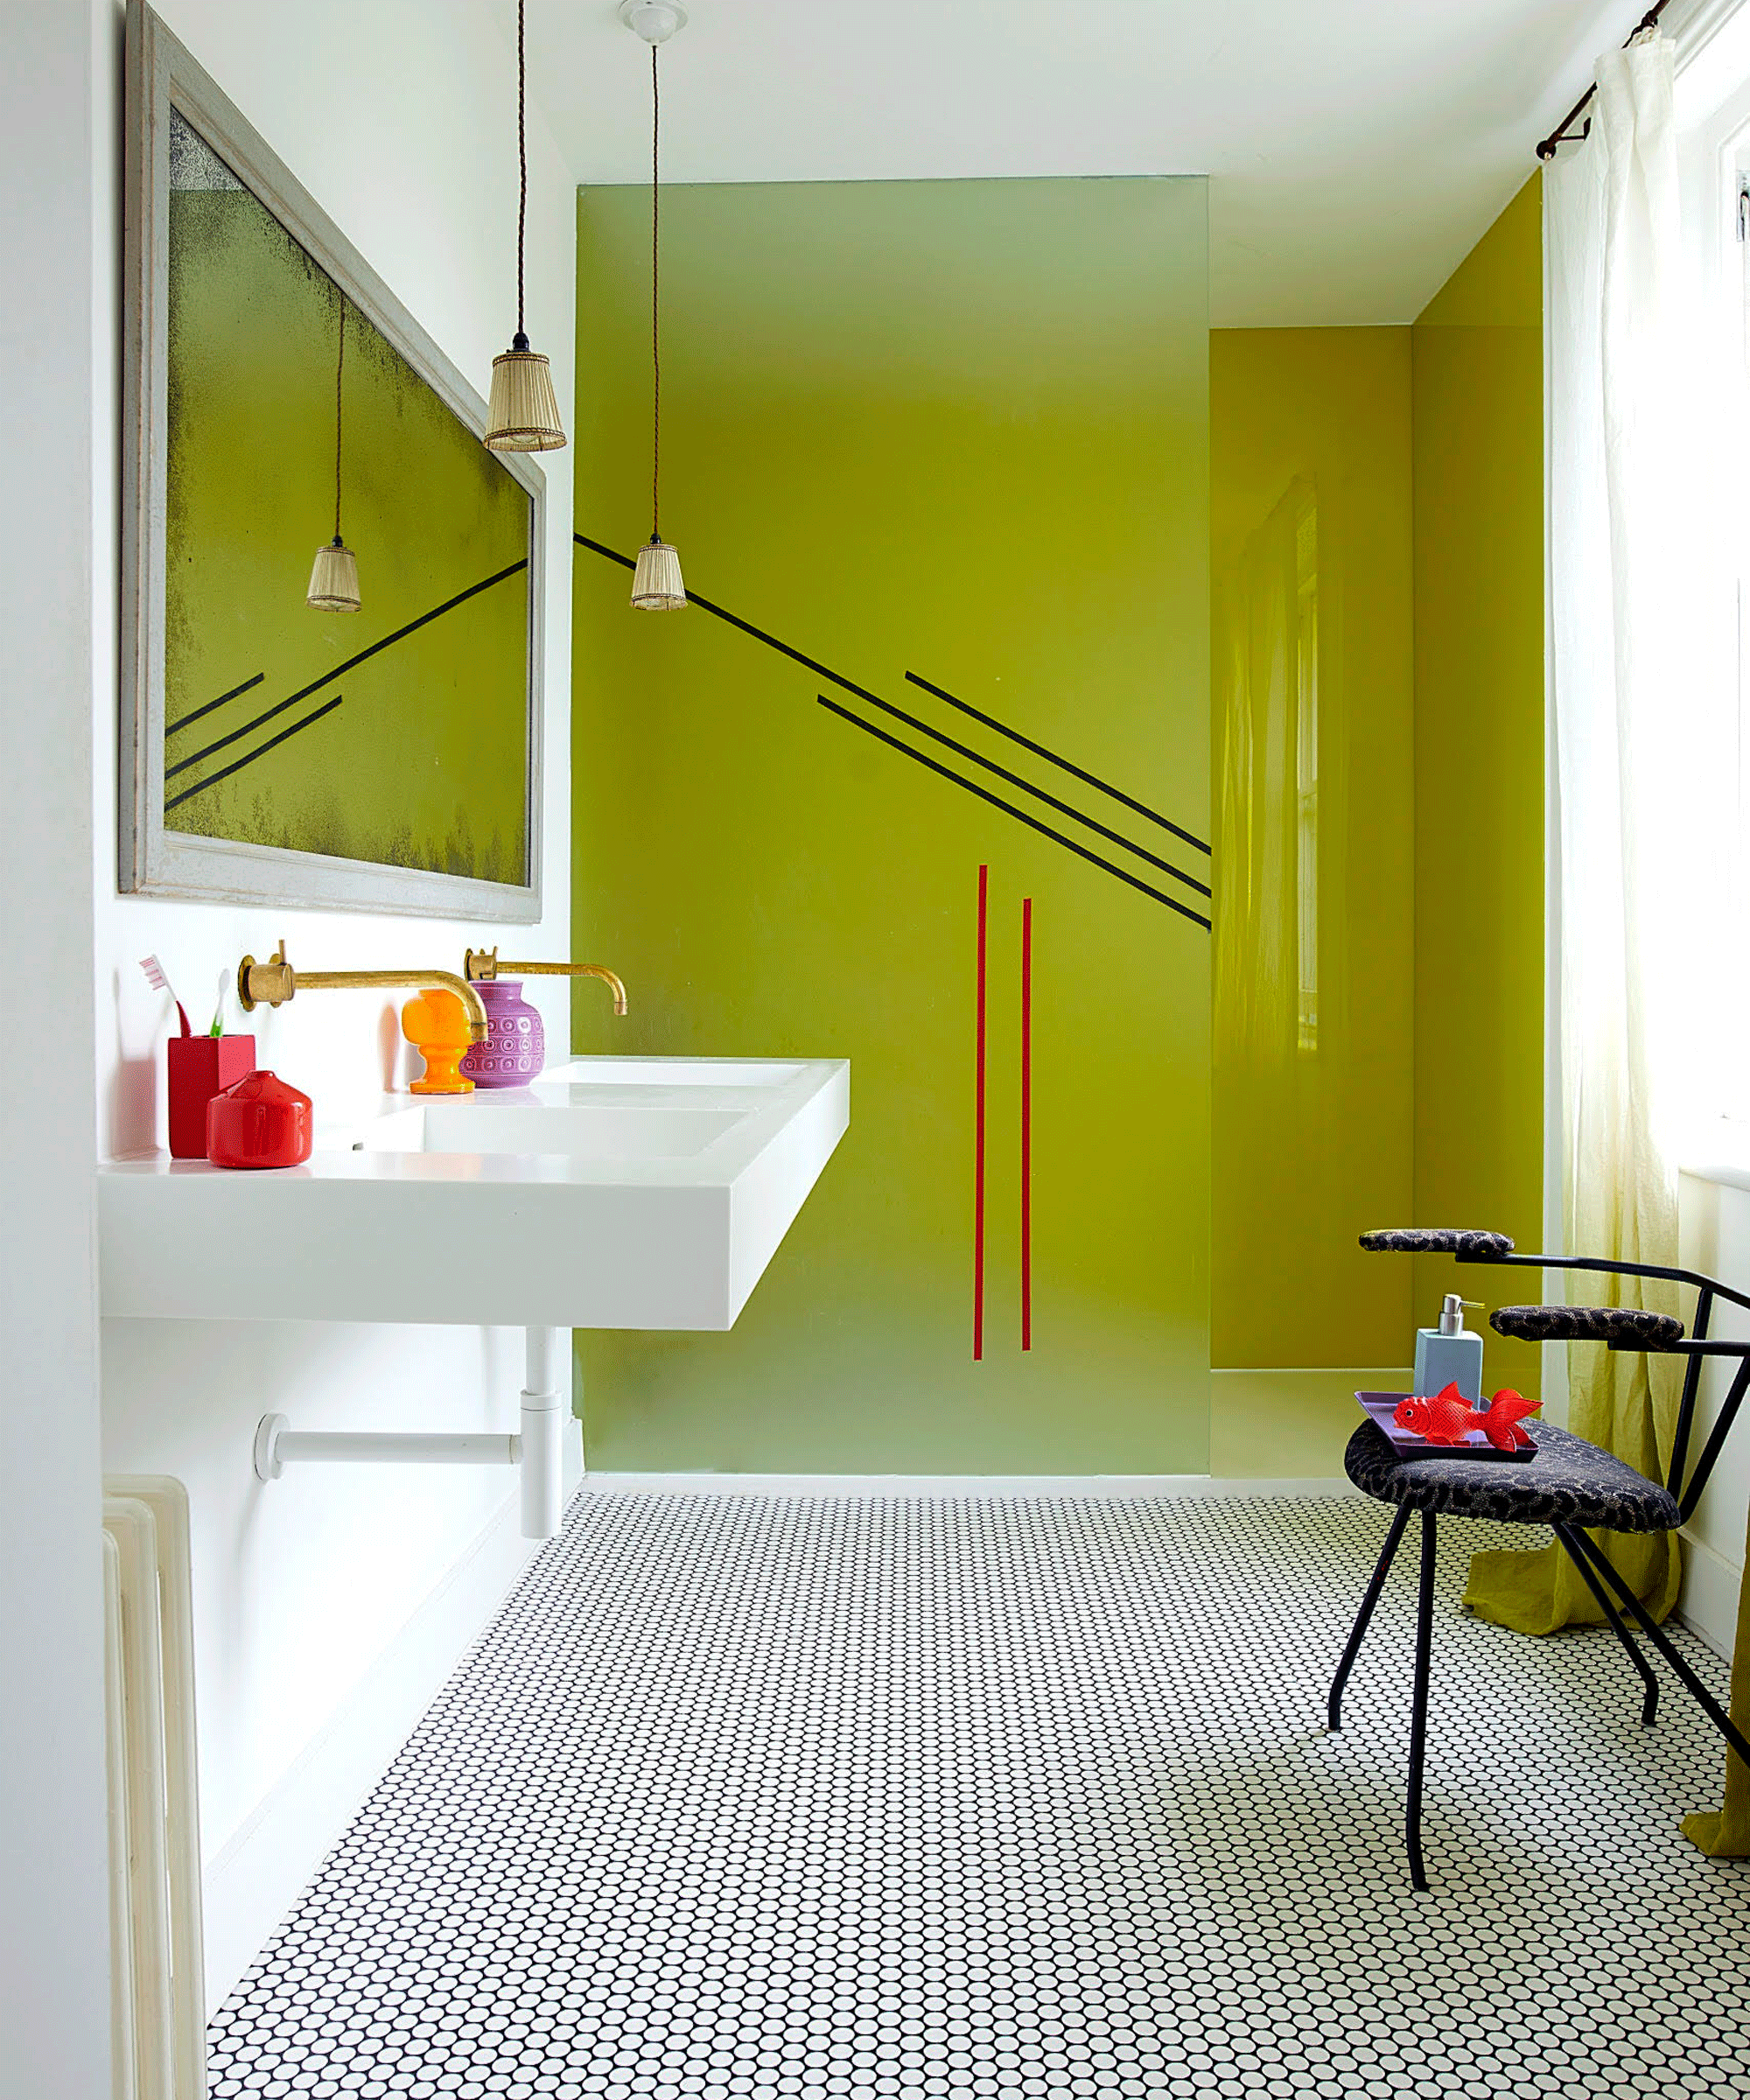 Green shower and penny tile vinyl flooring